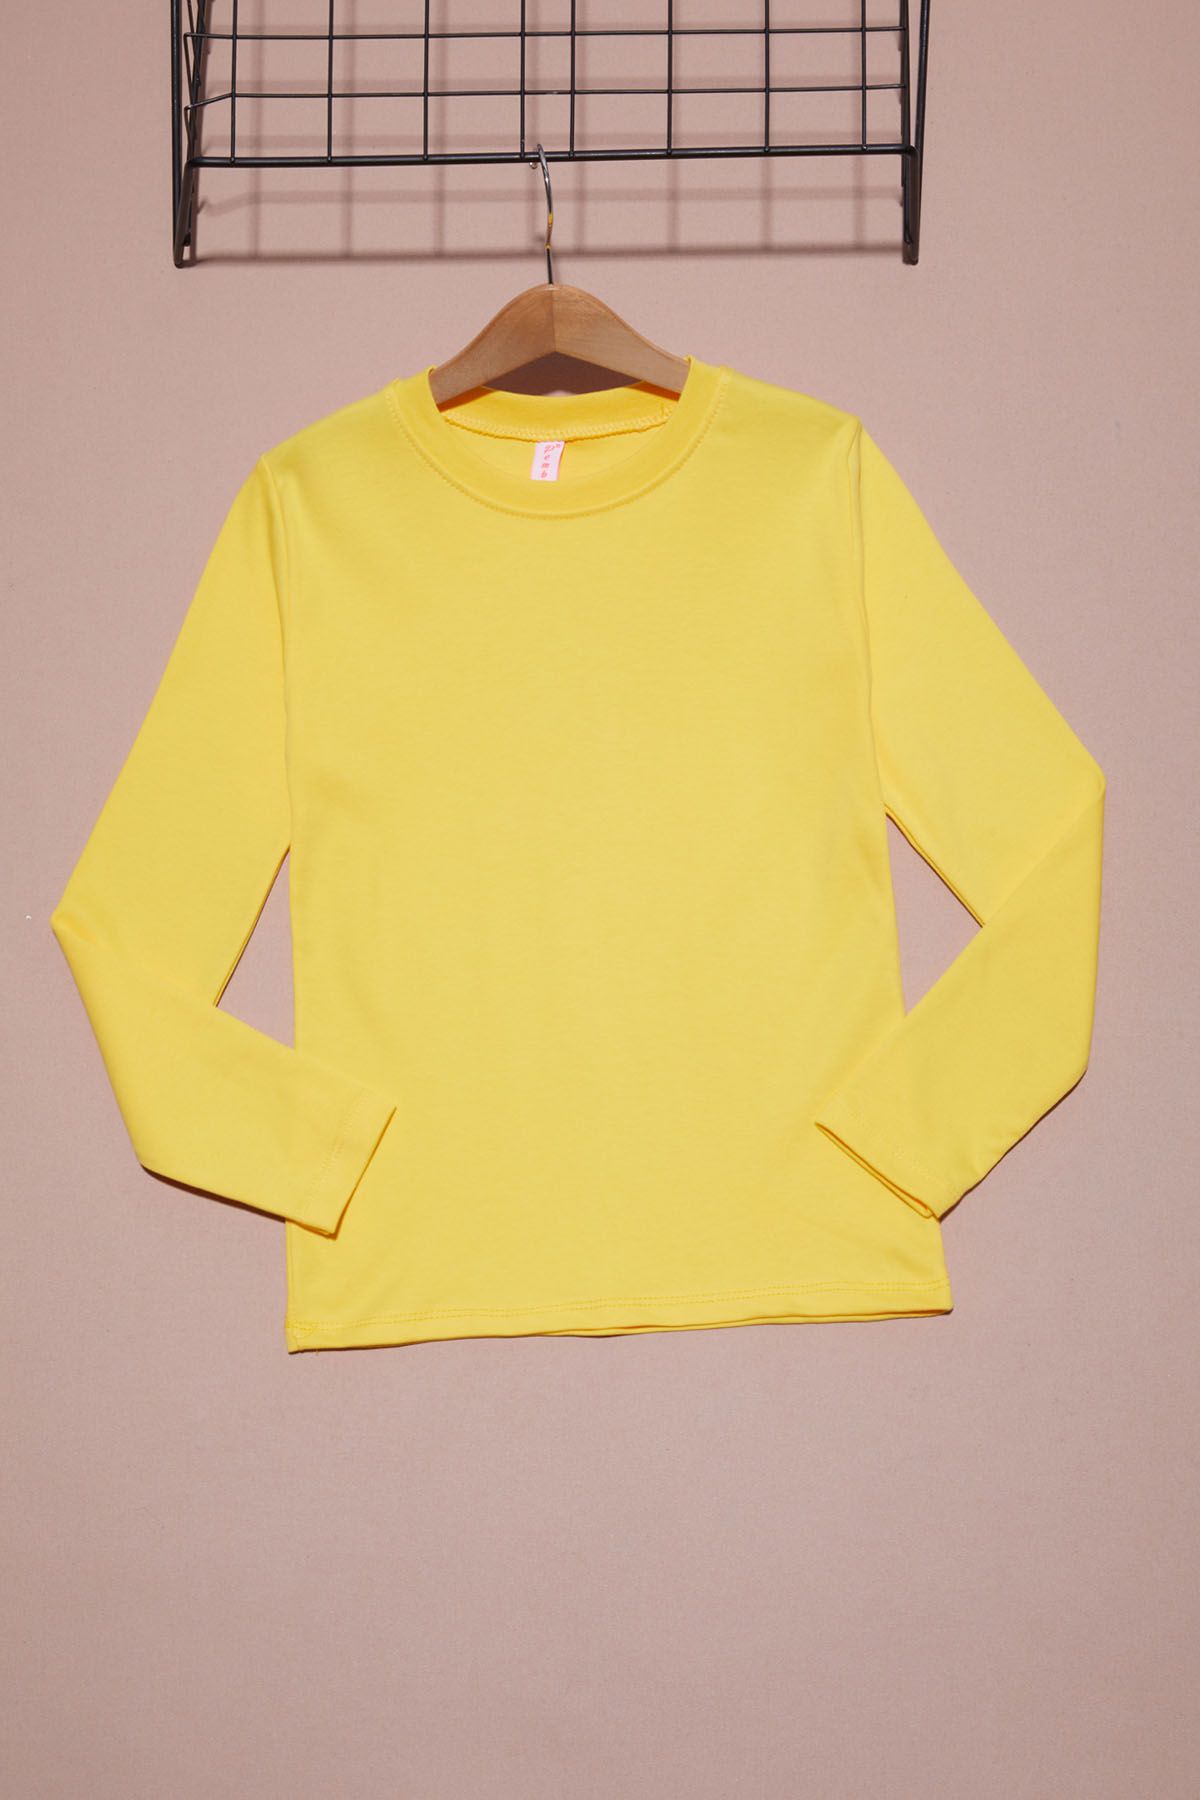 Cansın Mini Sarı Uzun Kollu Kız Çocuk Düz Sweatshirt 16425